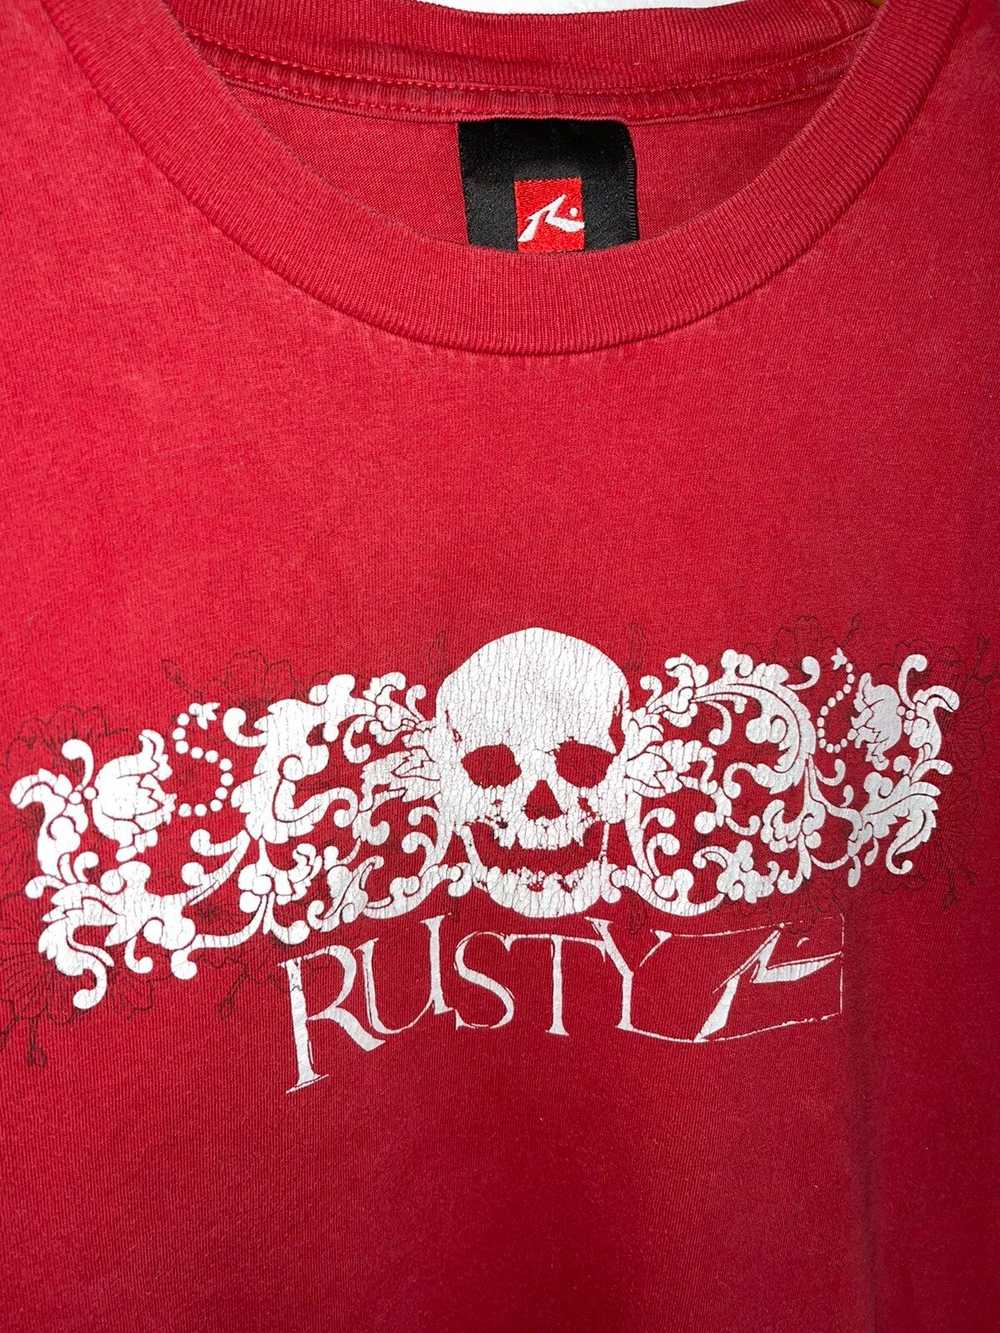 Rusty × Vintage Vintage Rusty Skull Tee - image 2